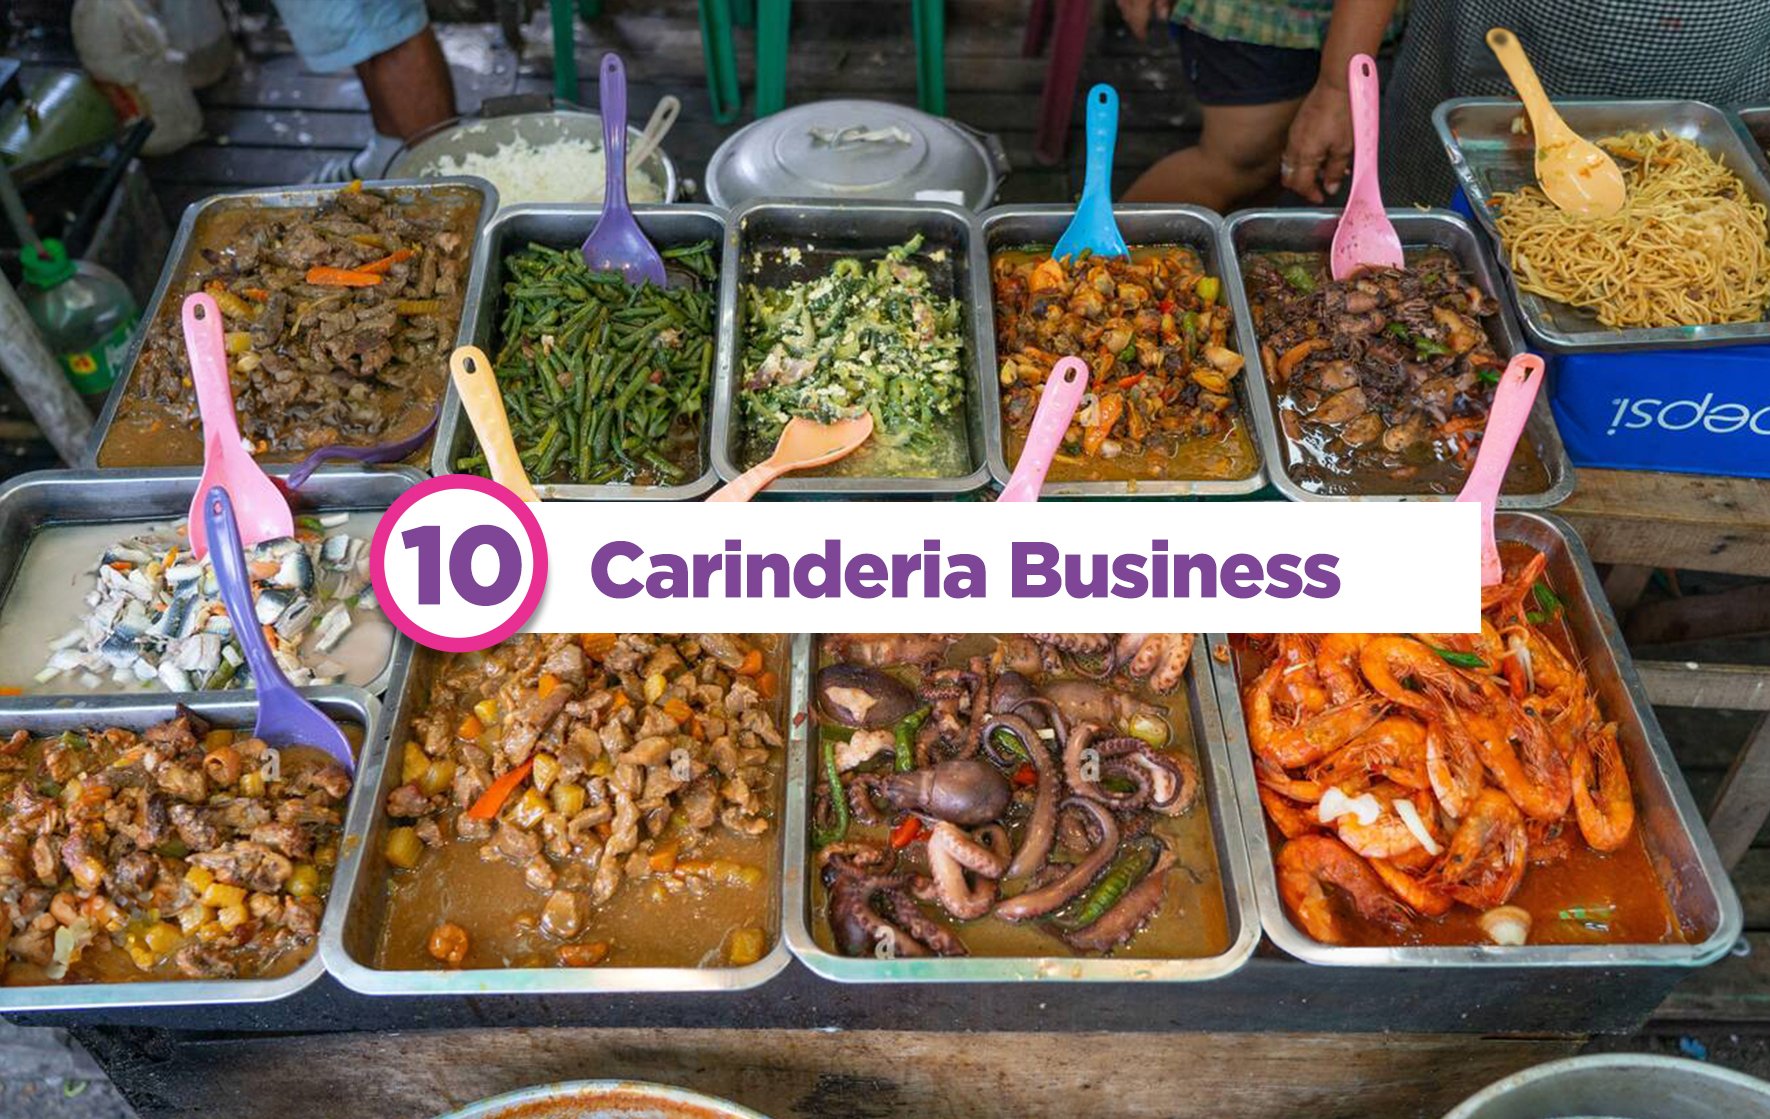 Popular carinderia food in the Philippines